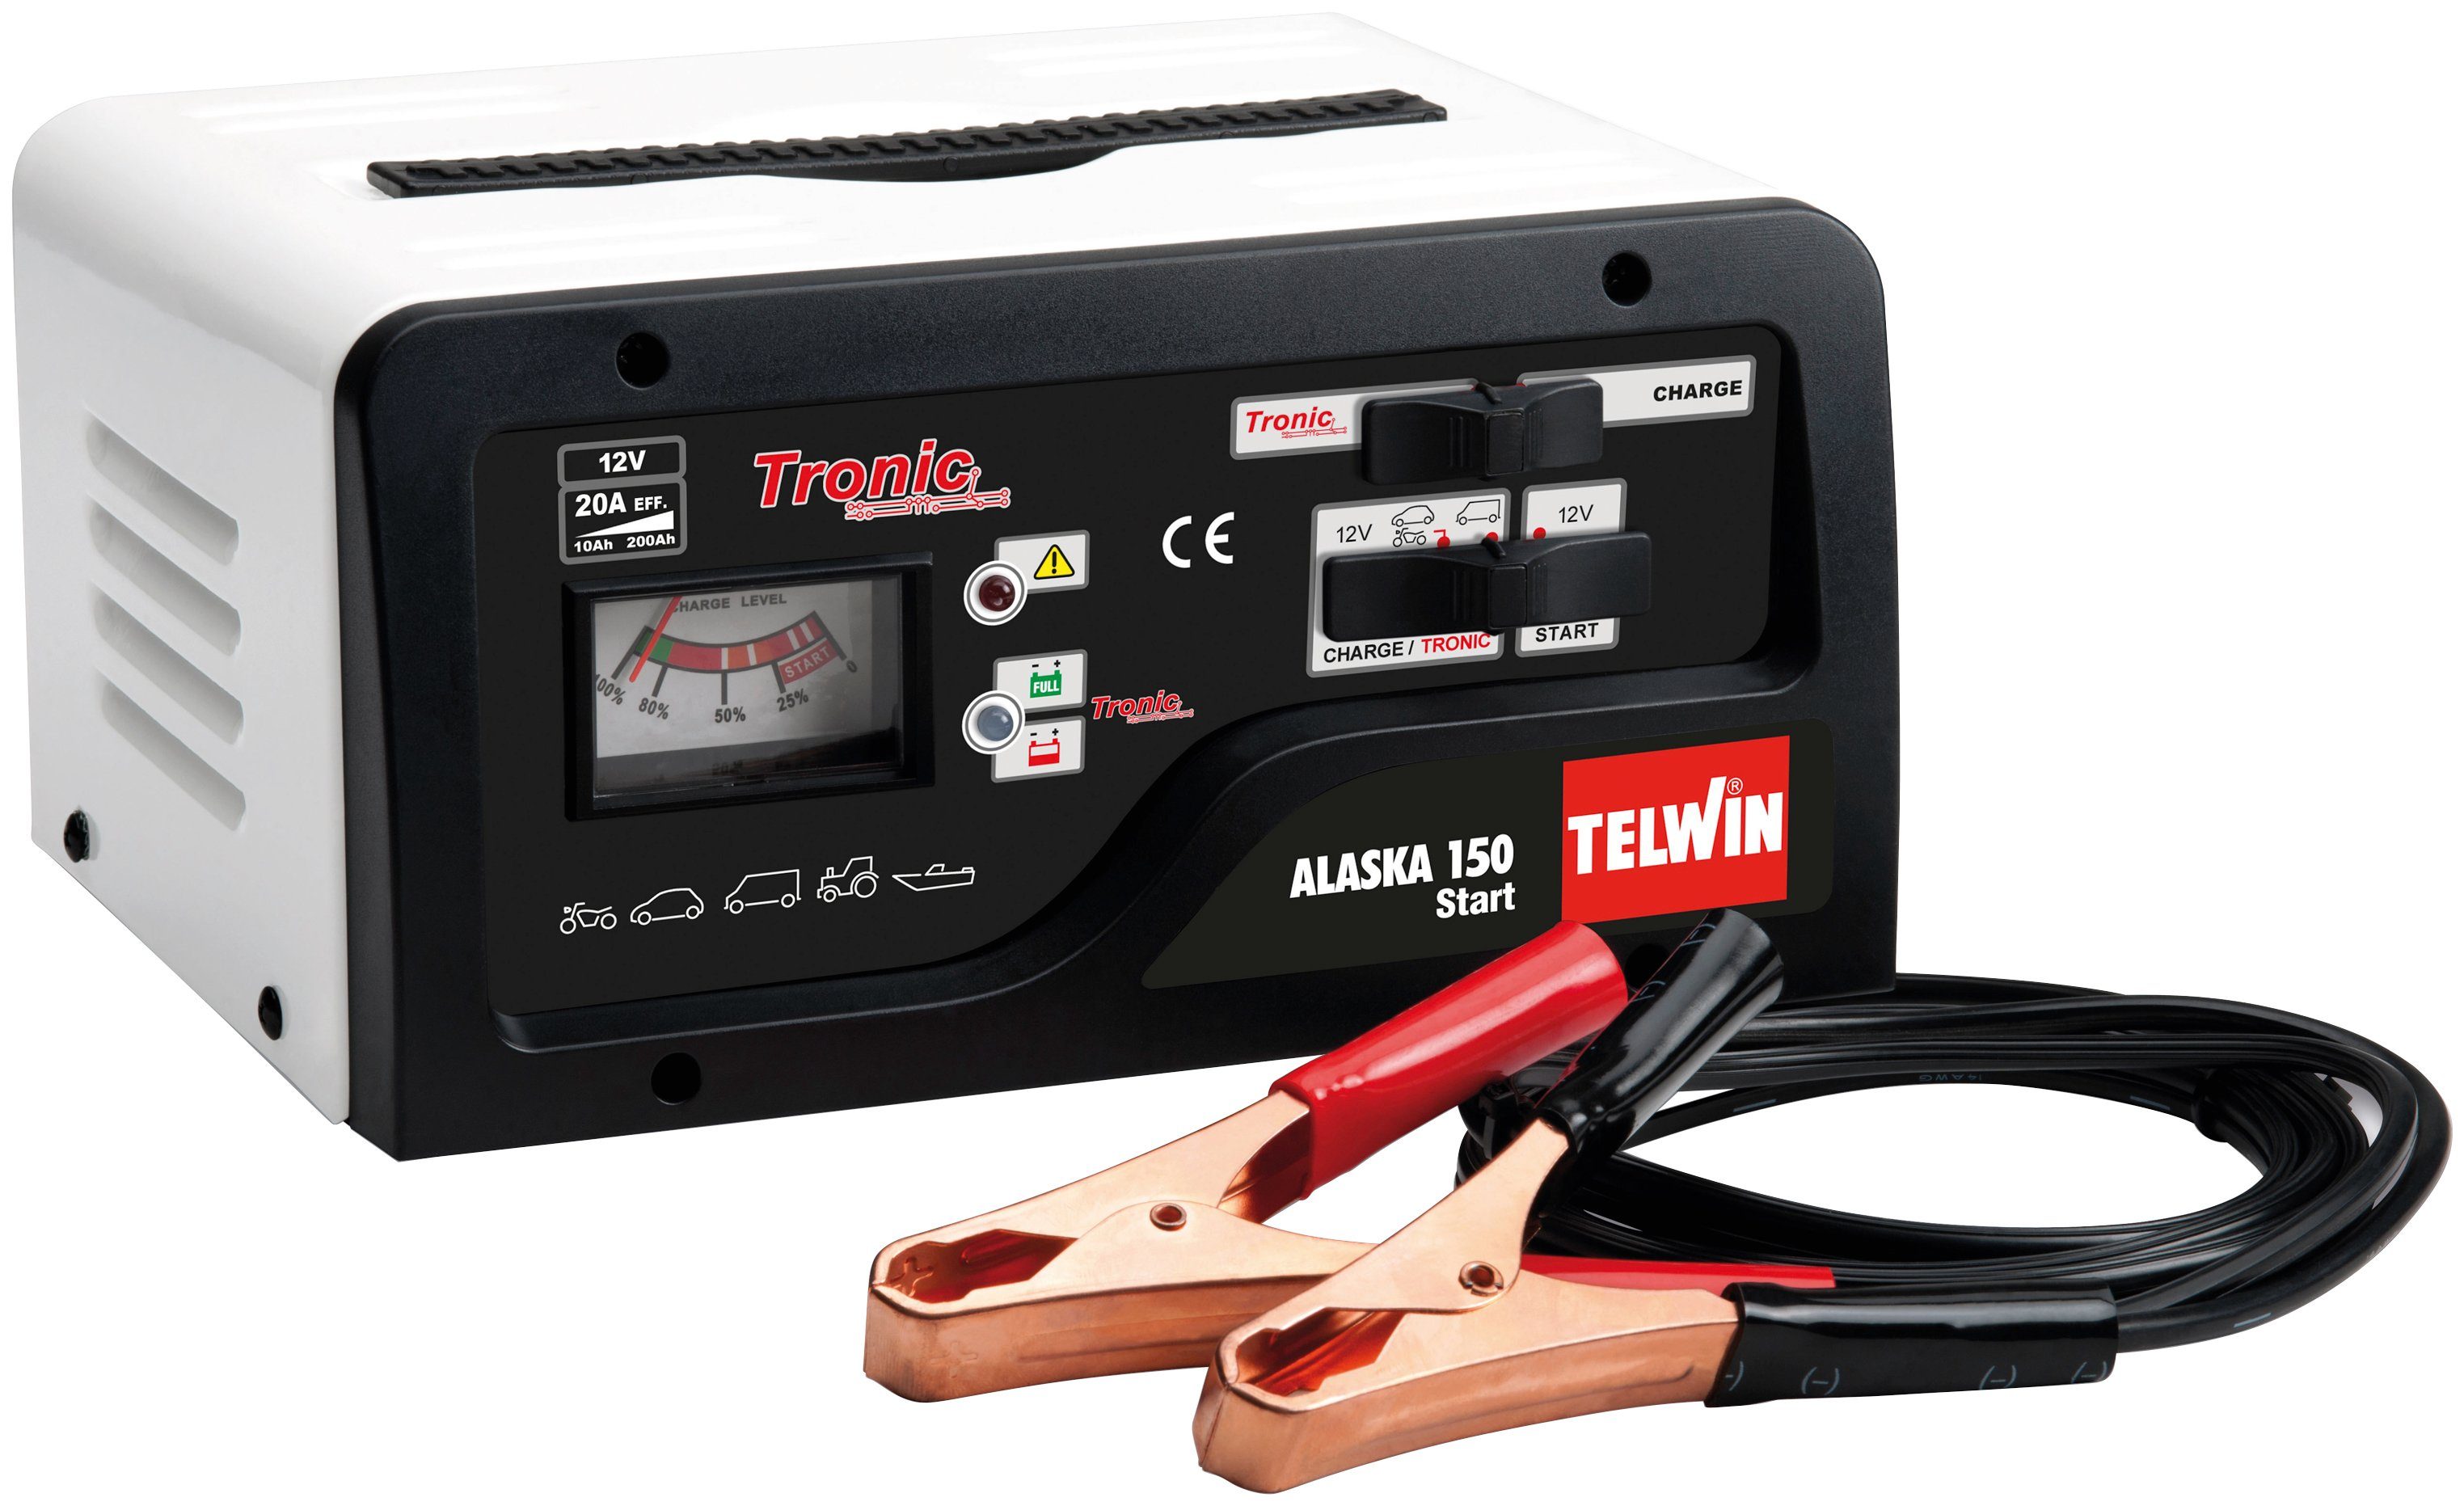 TELWIN Telwin Alaska 150 Start Autobatterie-Ladegerät (230V 12-24V) | Autobatterie-Ladegeräte